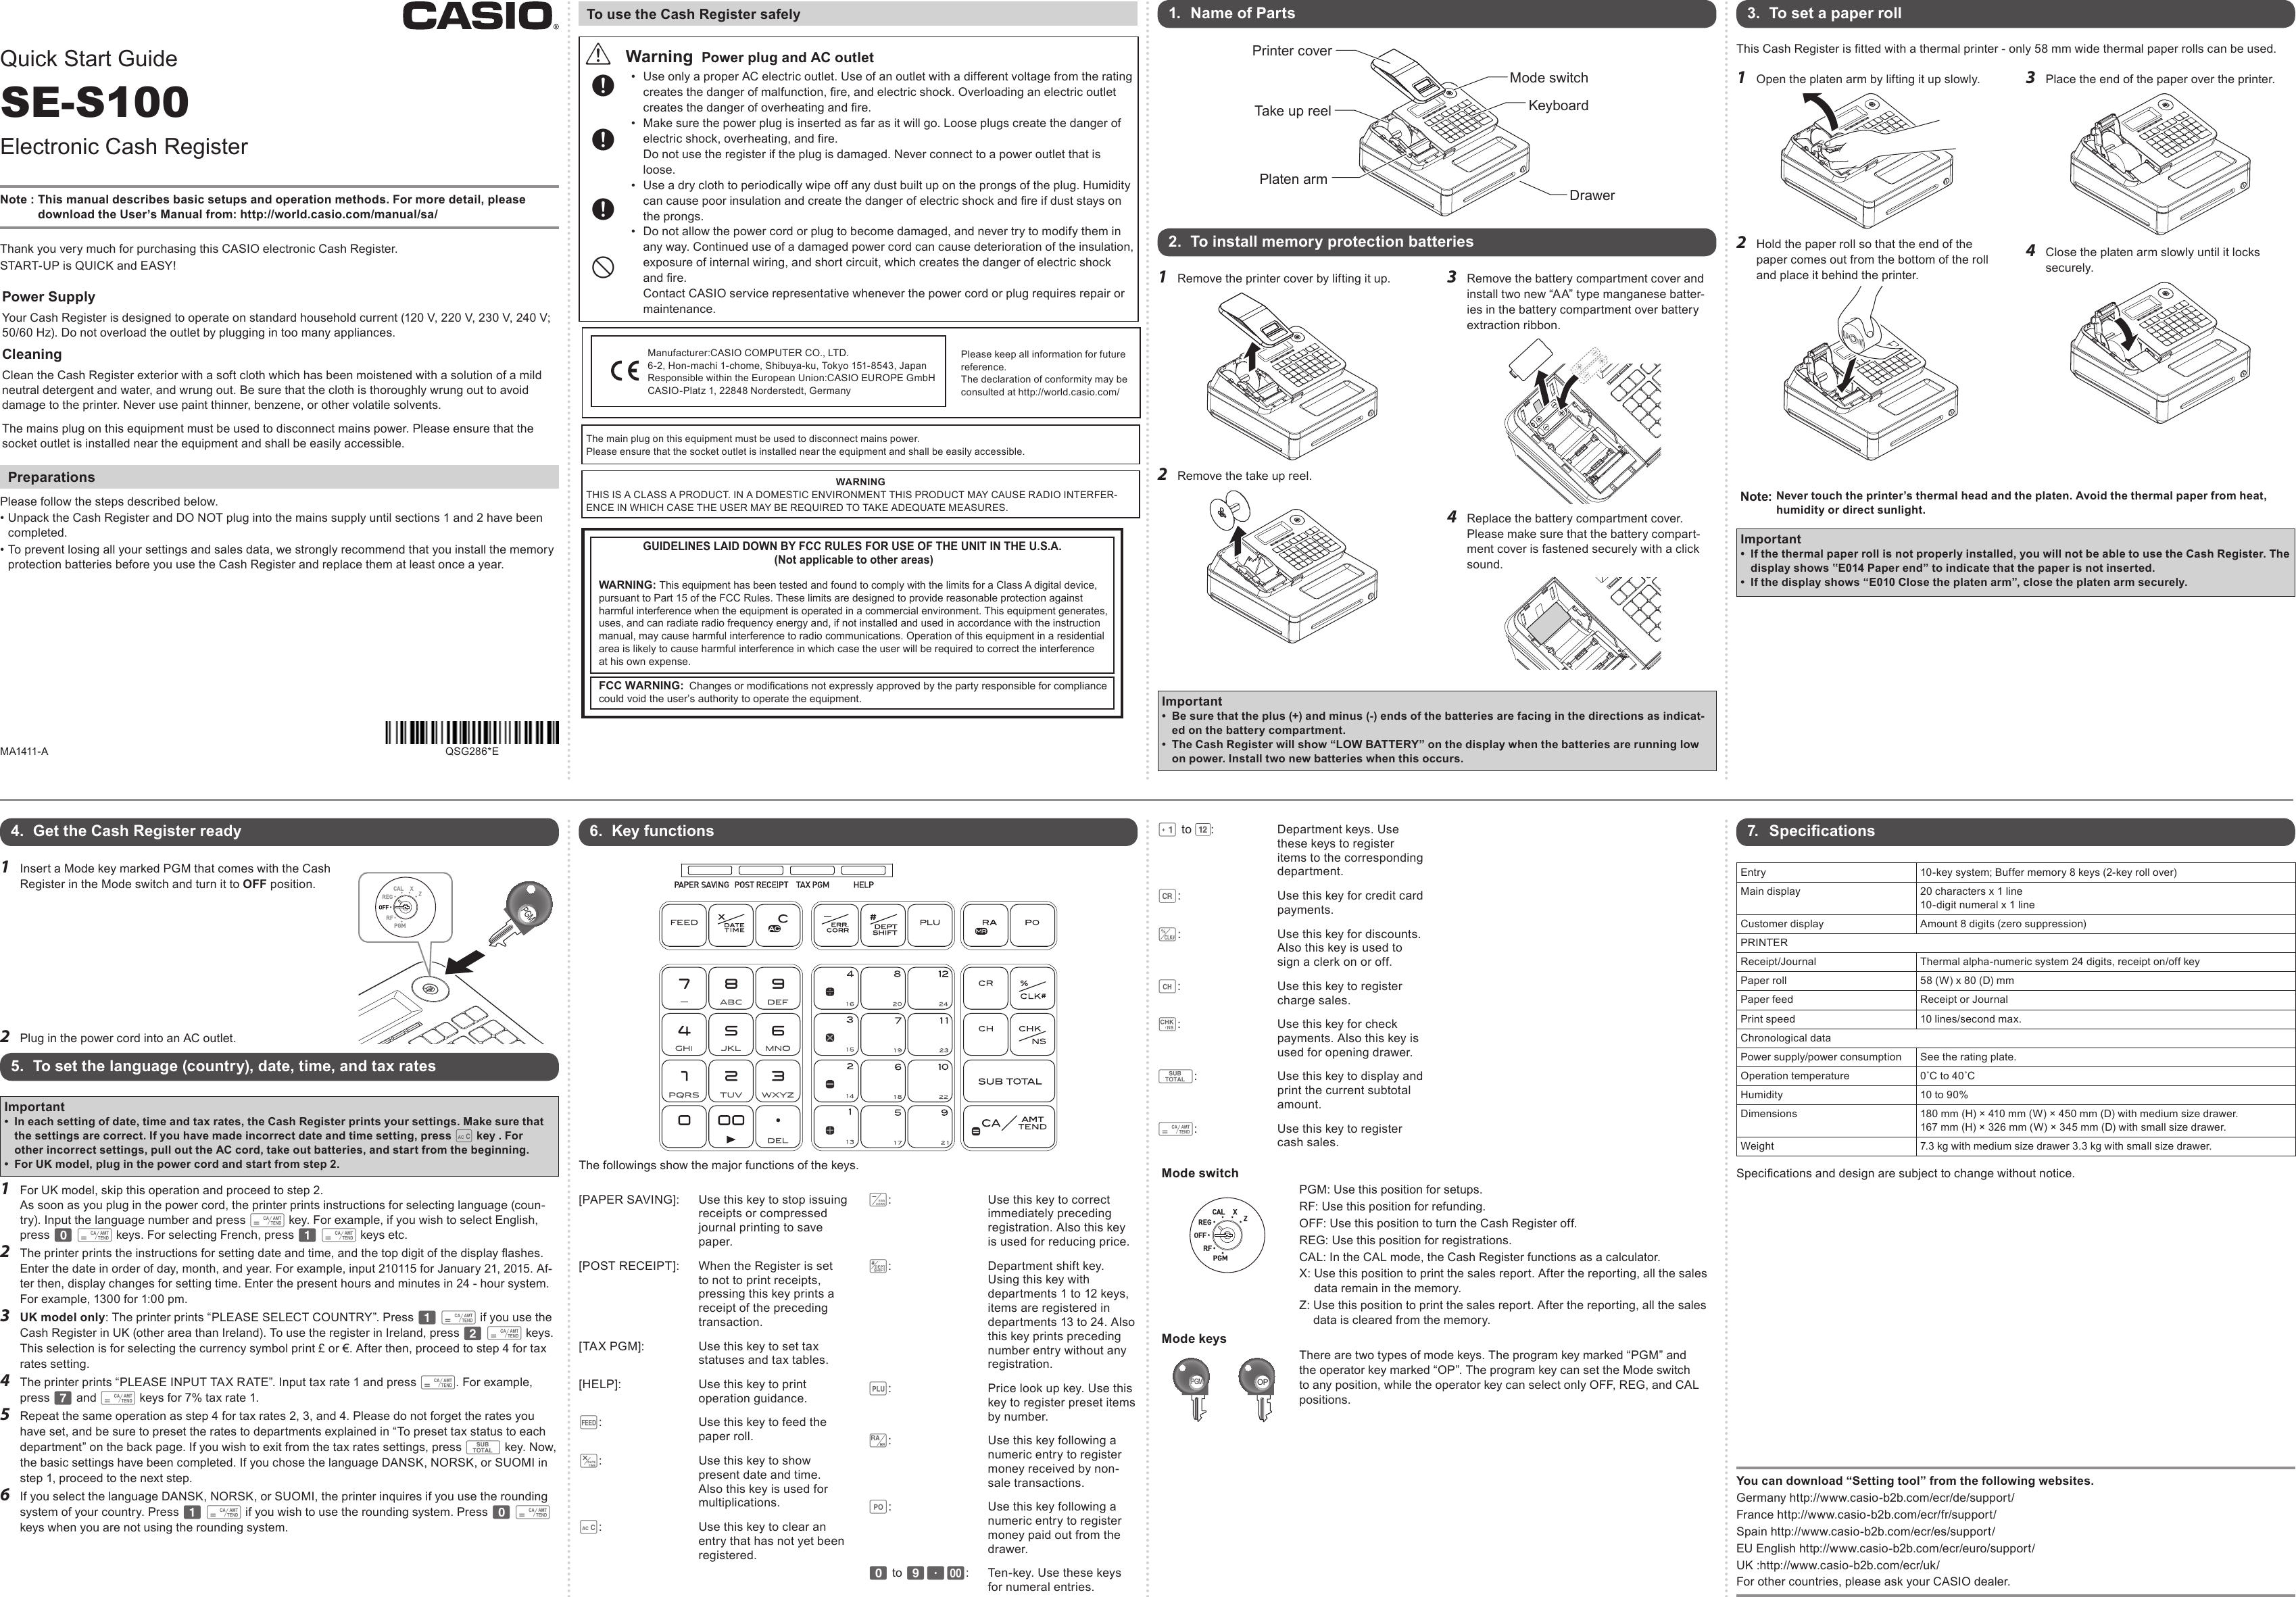 Casio SE S100 User Manual To The A2fdd54e 8649 47a6 b04e 1d615f8e608d